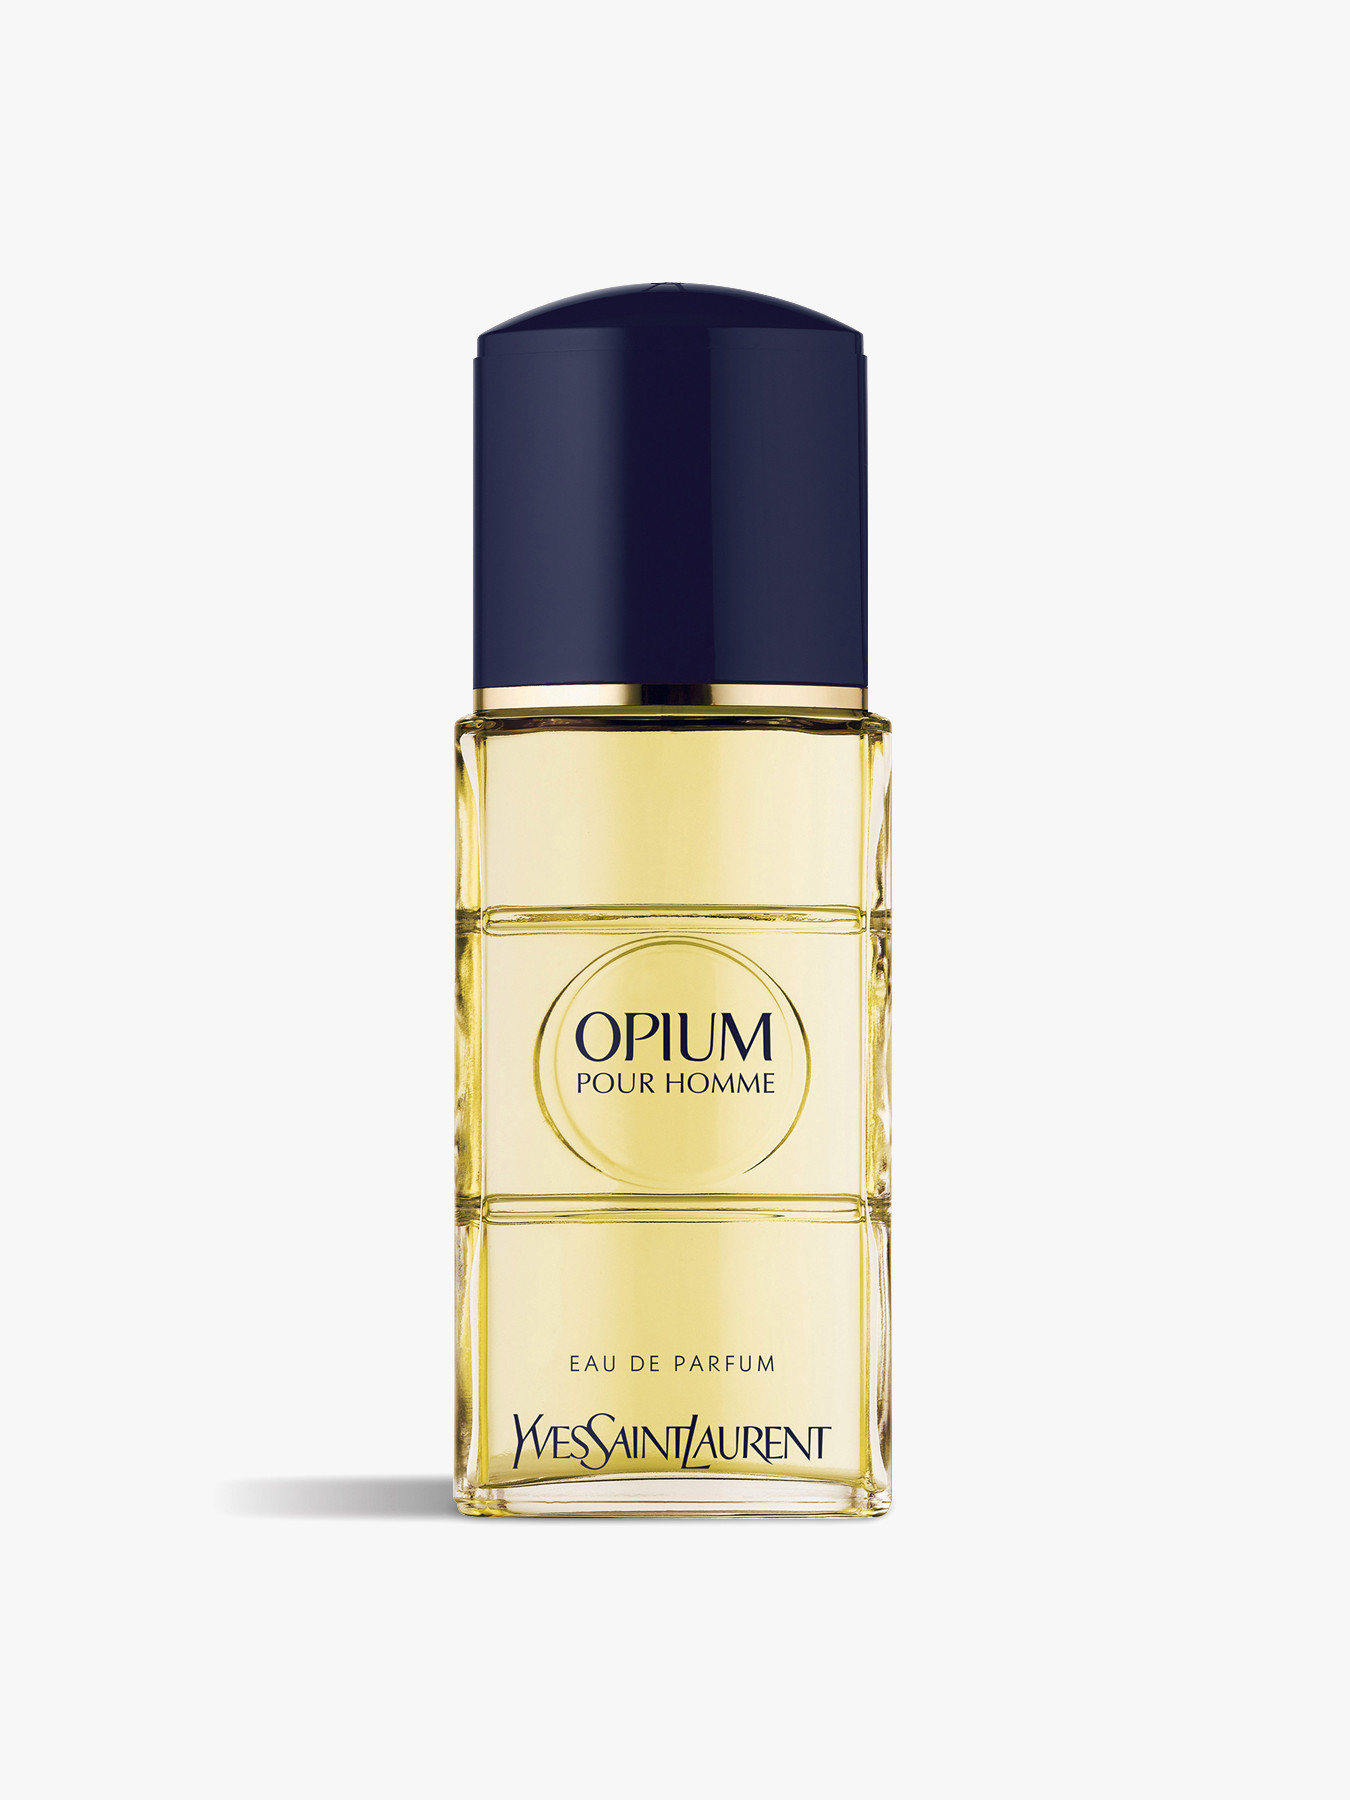 Yves Saint Laurent Opium Pour Homme Eau De Parfum 50ml Italy, SAVE 35% -  lutheranems.com